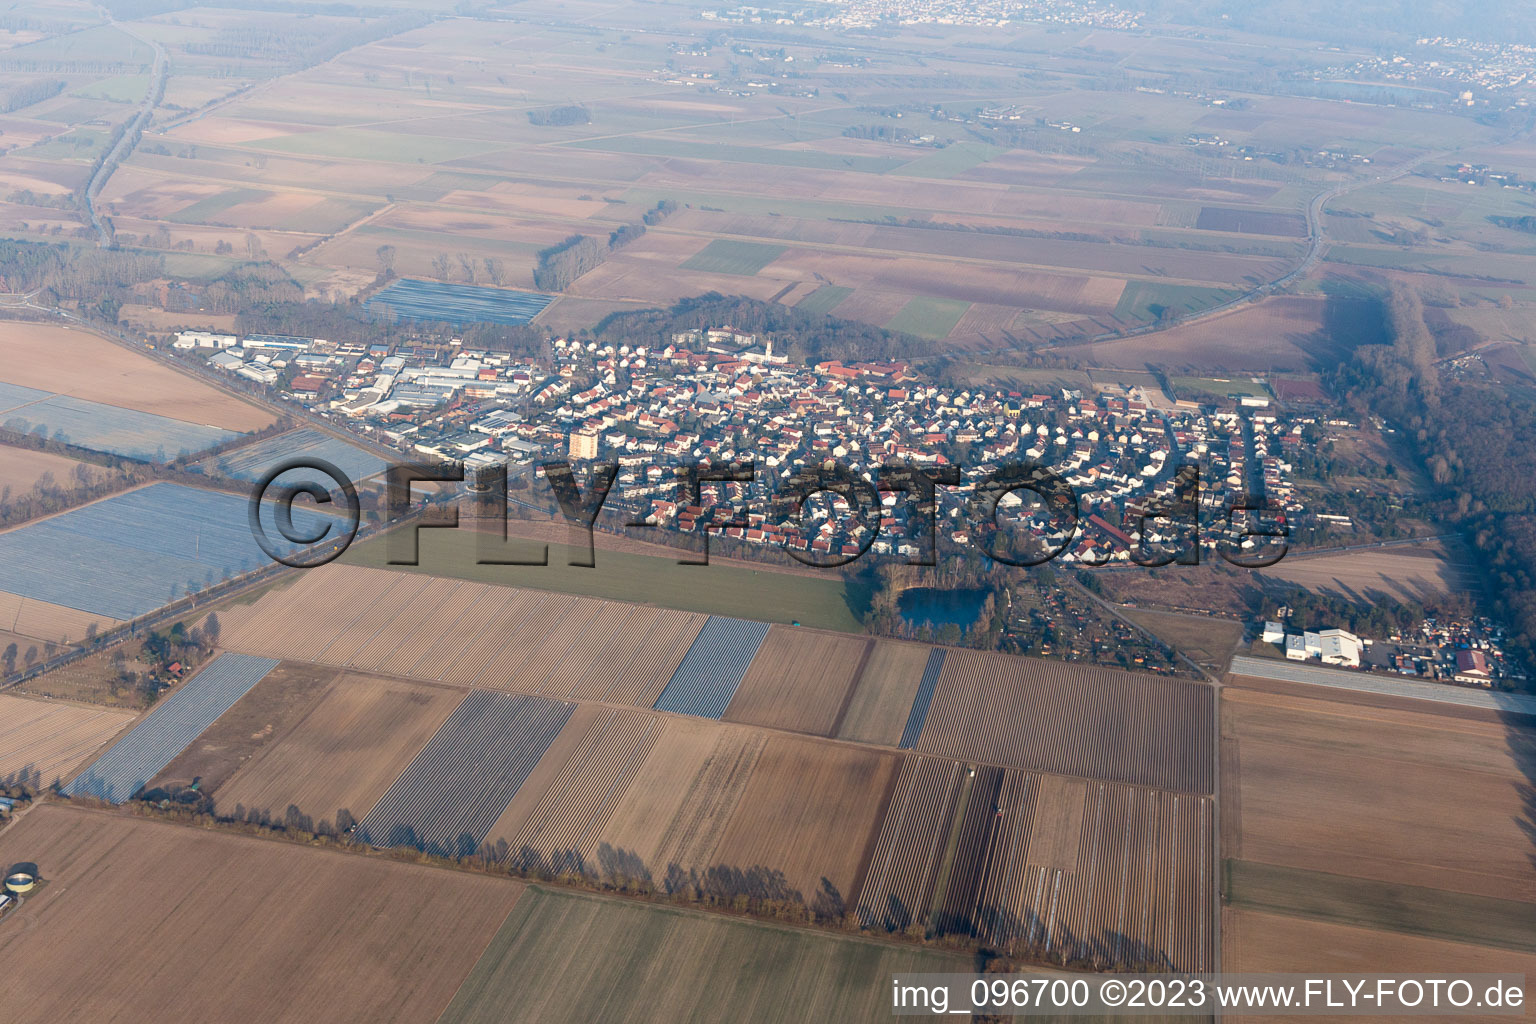 Photographie aérienne de Hüttenfeld dans le département Hesse, Allemagne